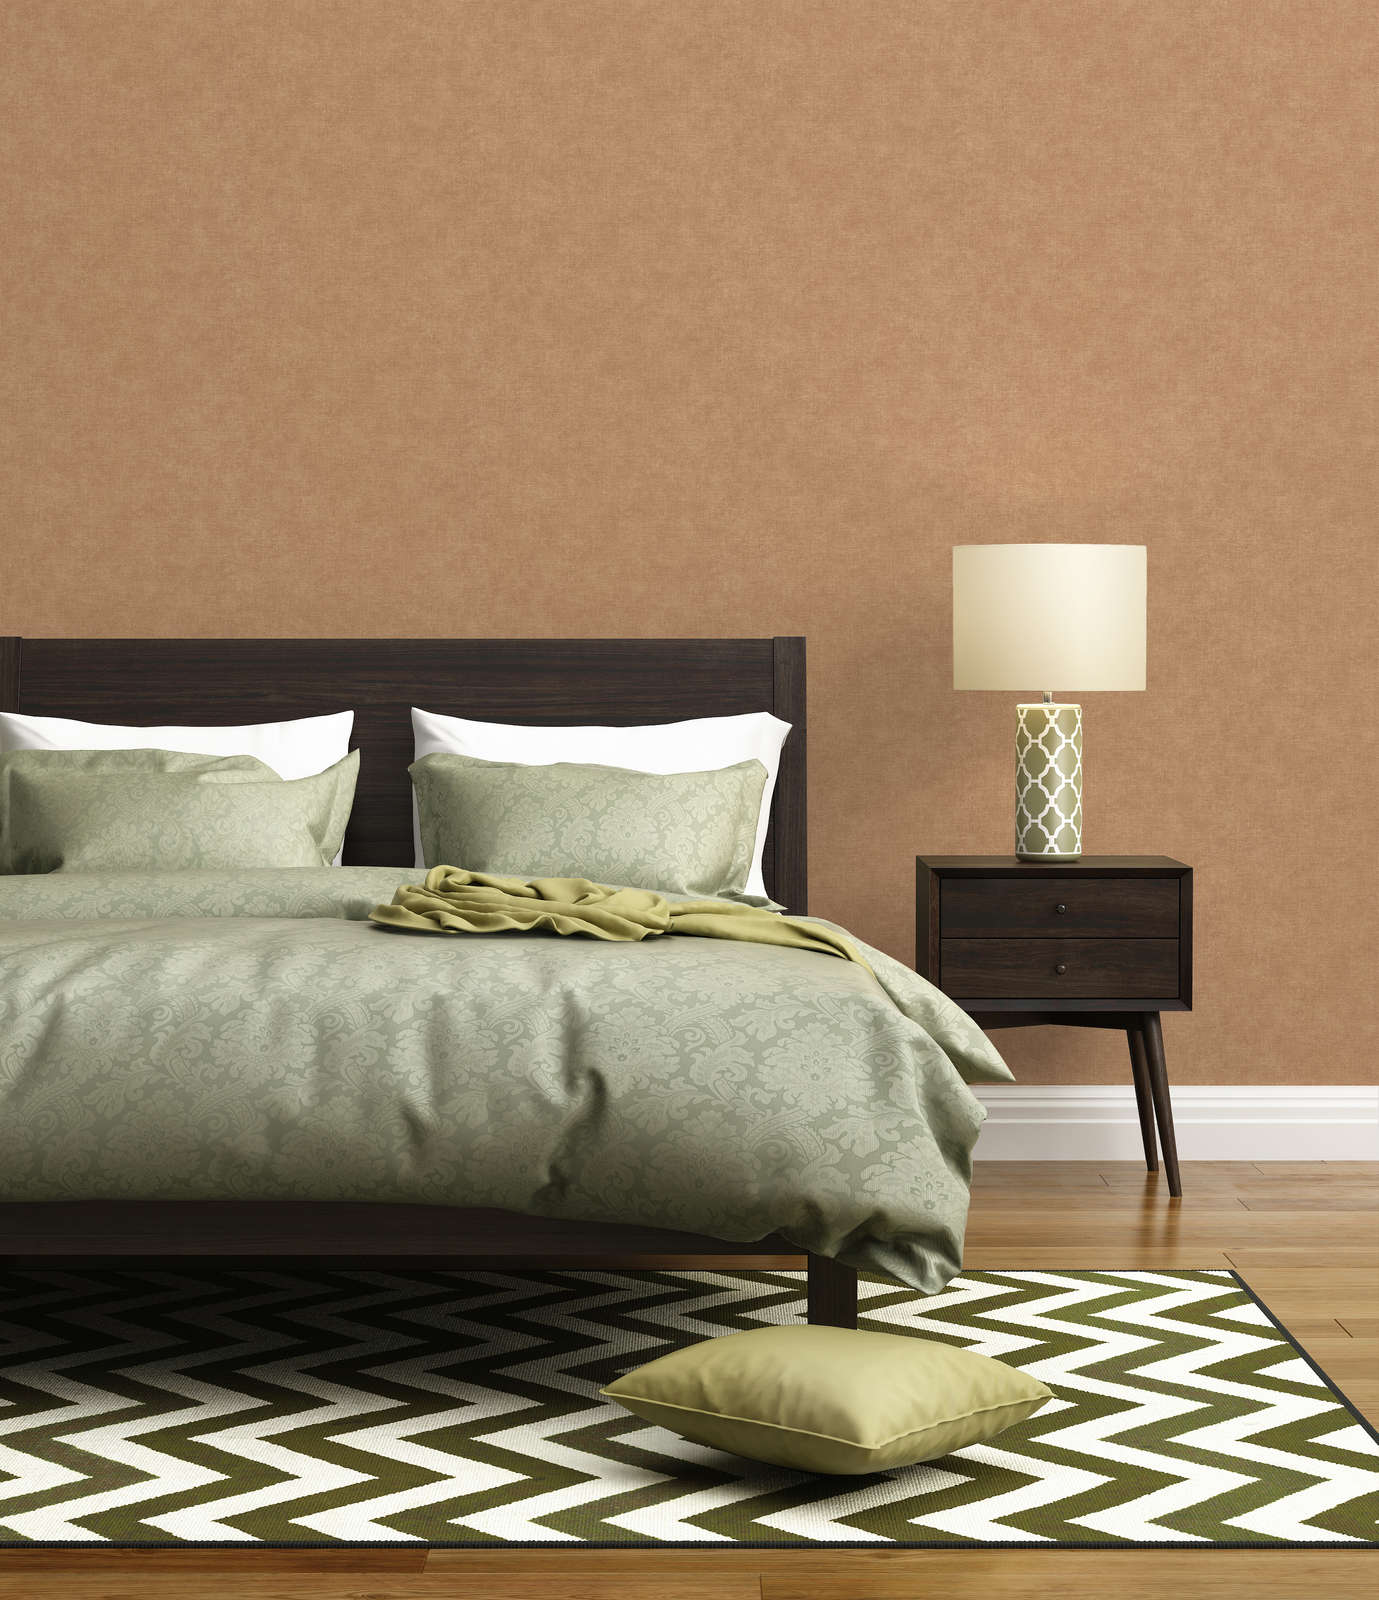             Papel pintado unitario con textura ligera en aspecto textil - marrón, beige
        